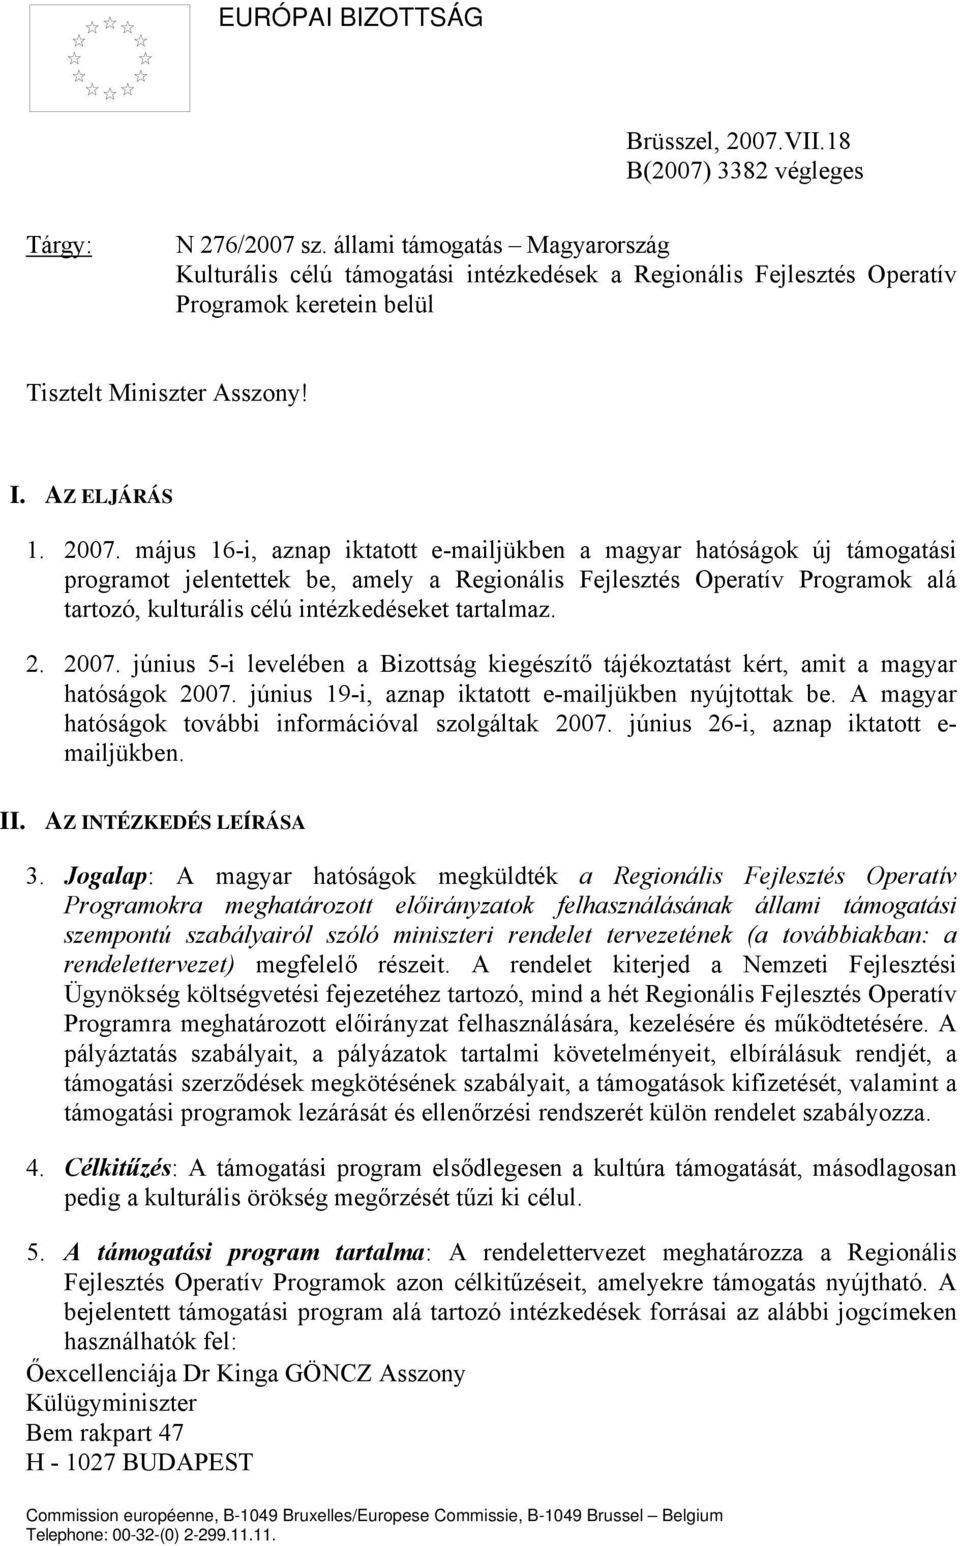 május 16-i, aznap iktatott e-mailjükben a magyar hatóságok új támogatási programot jelentettek be, amely a Regionális Fejlesztés Operatív Programok alá tartozó, kulturális célú intézkedéseket